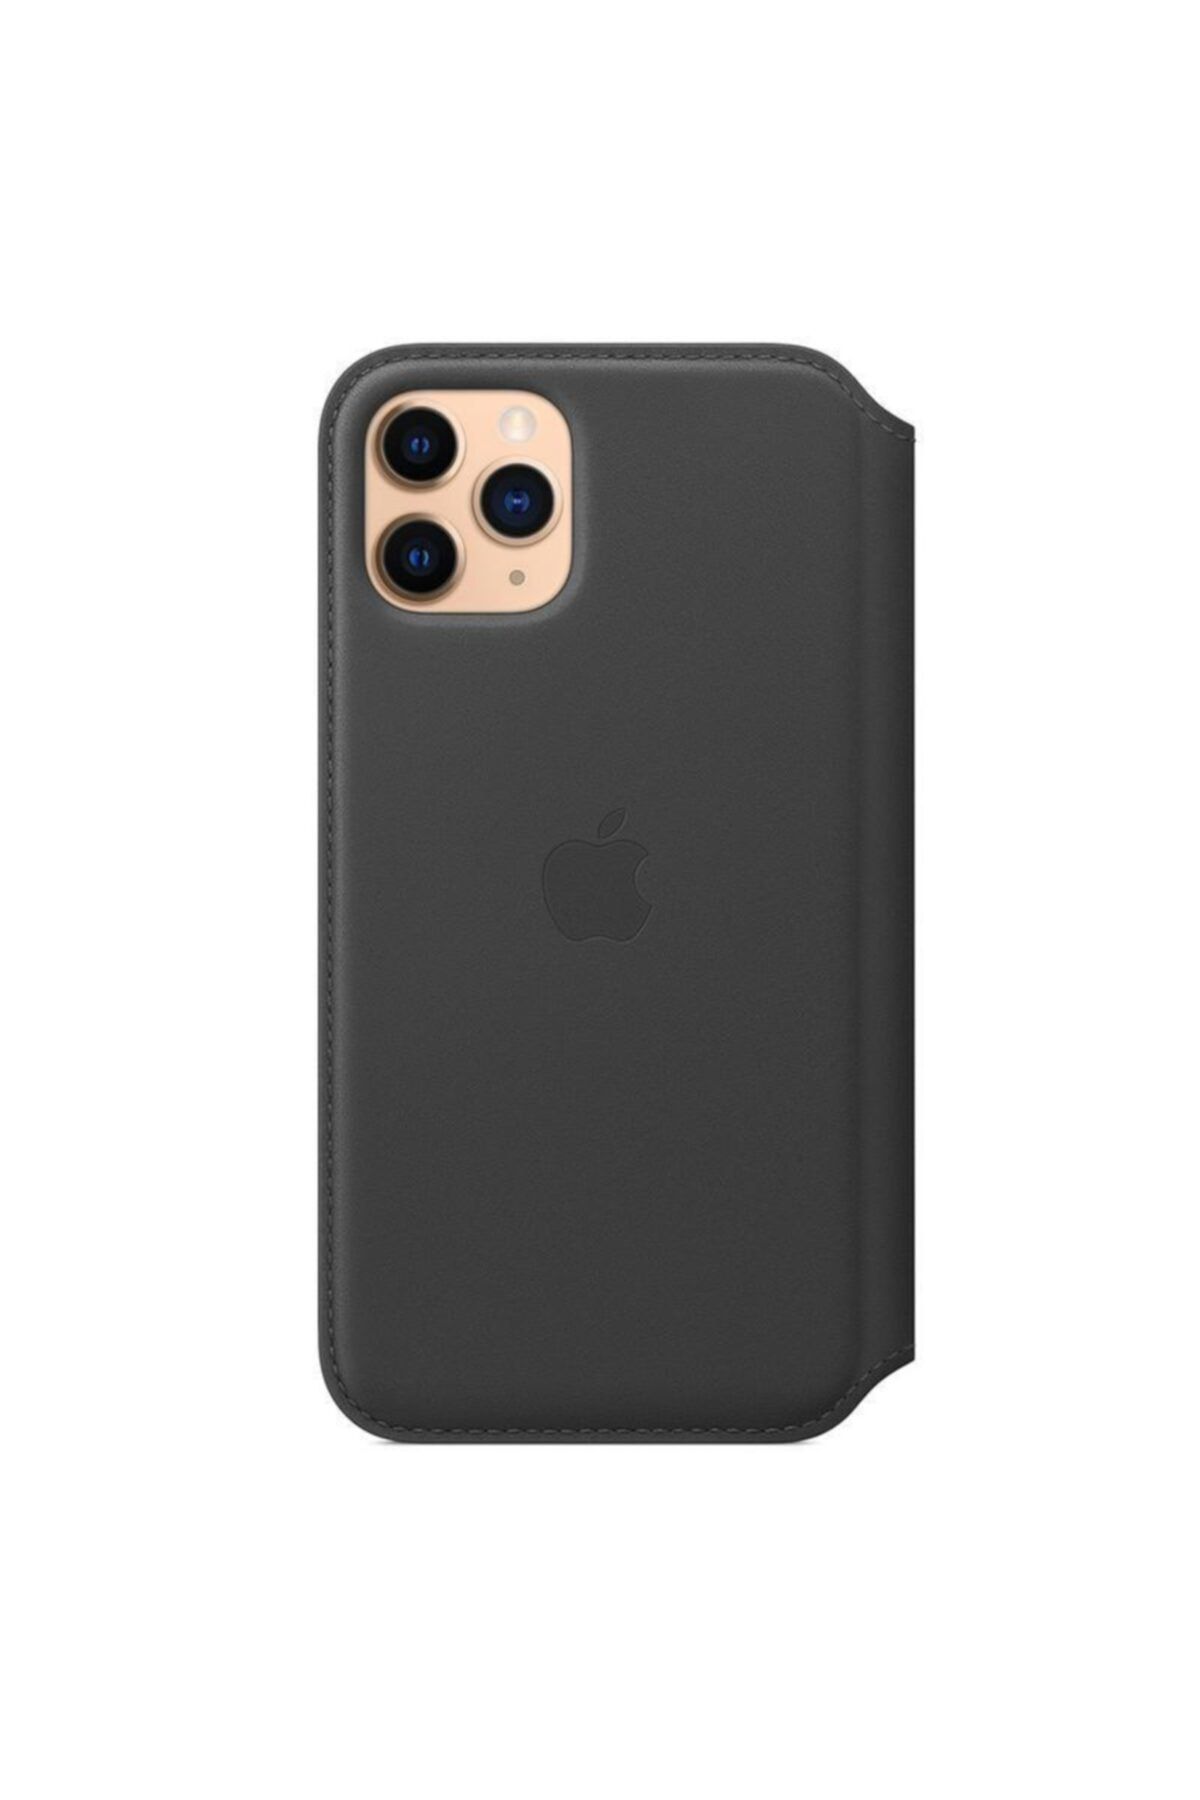 Apple Iphone 11 Pro Deri Folyo Kılıf Siyah - Mx062zm/a ( Türkiye Garantili)